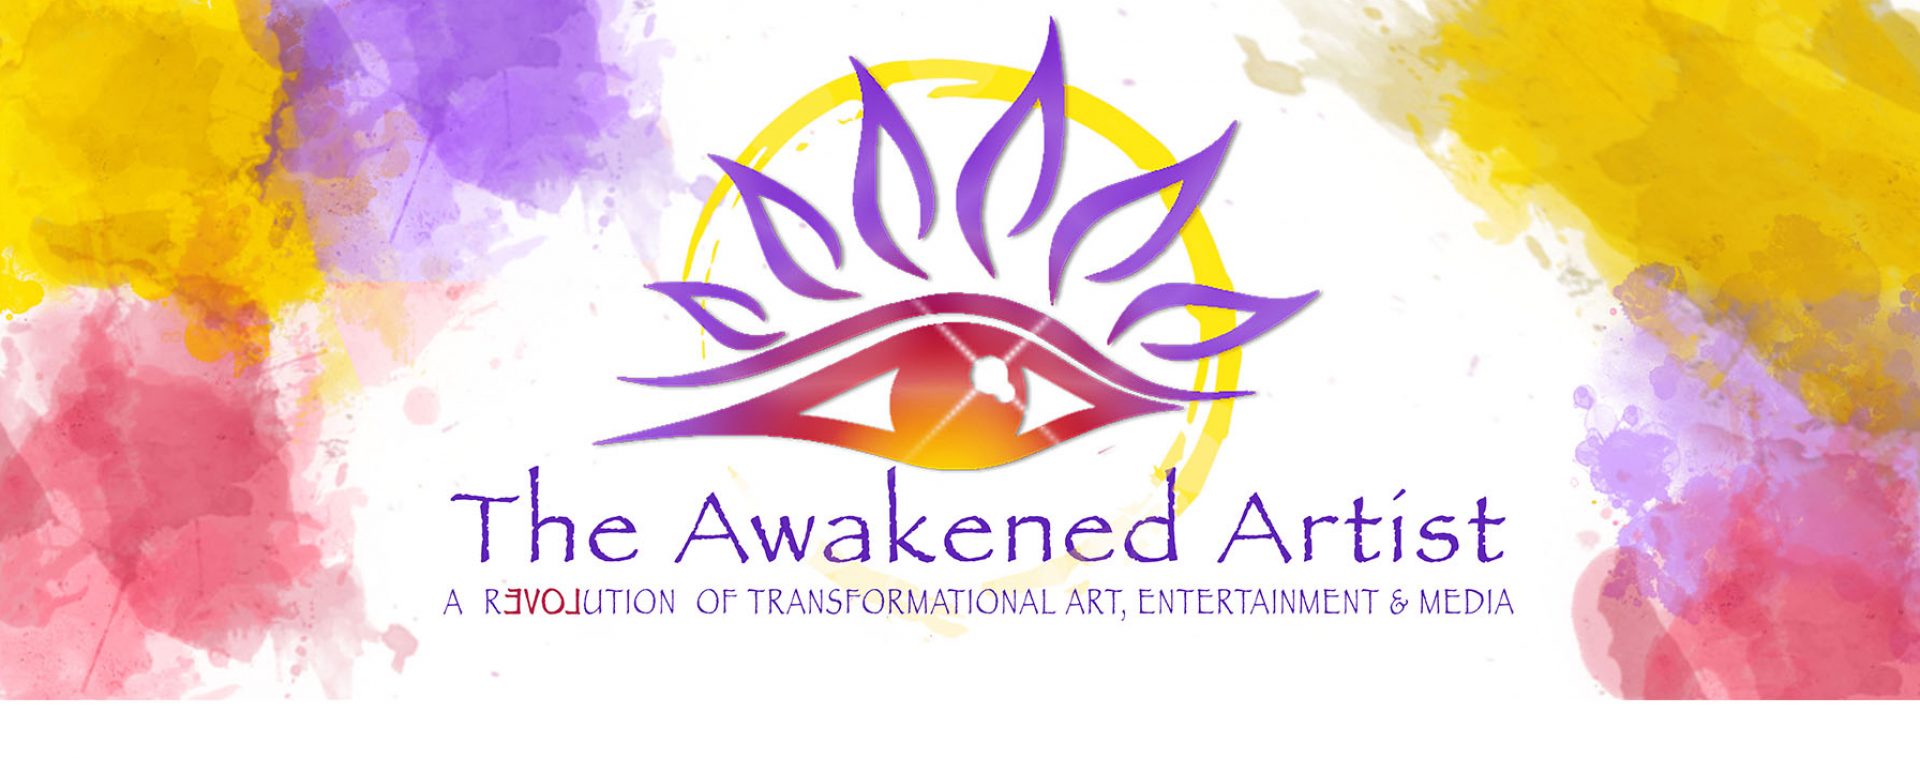 The Awakened Artist